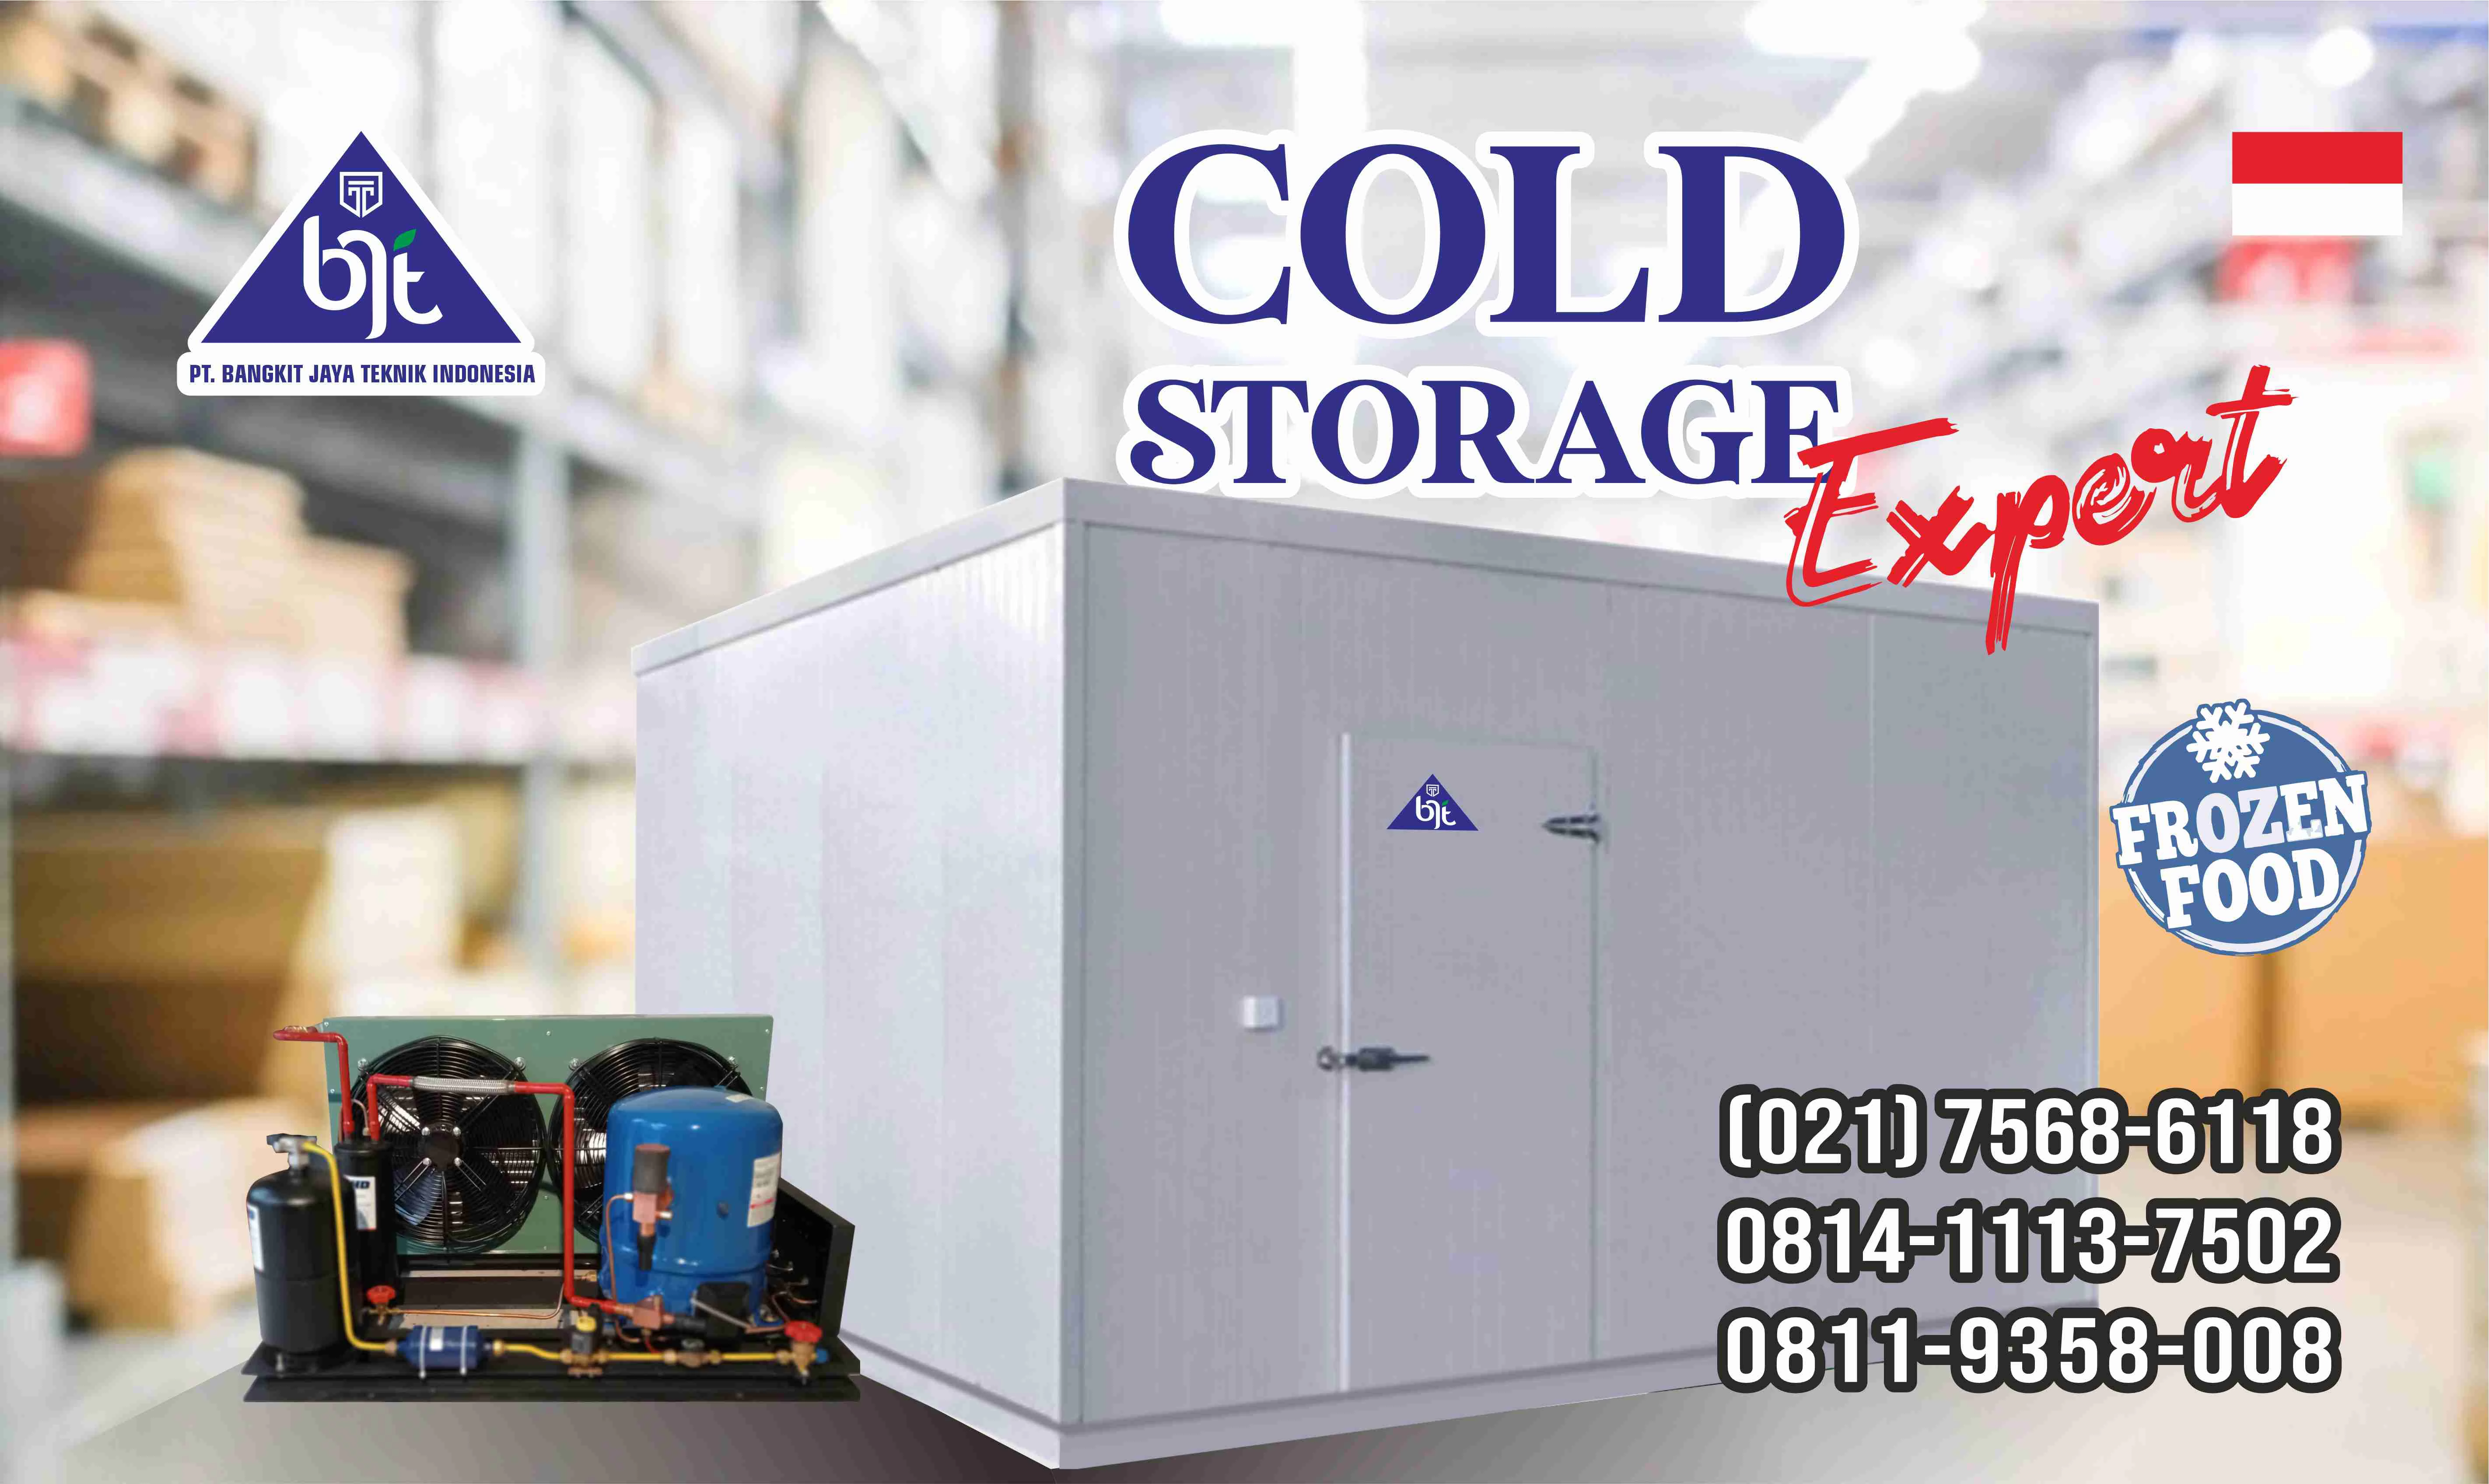 Harga Cold Storage 5 Ton: Penjelasan Lengkap tentang Biaya dan Keuntungan